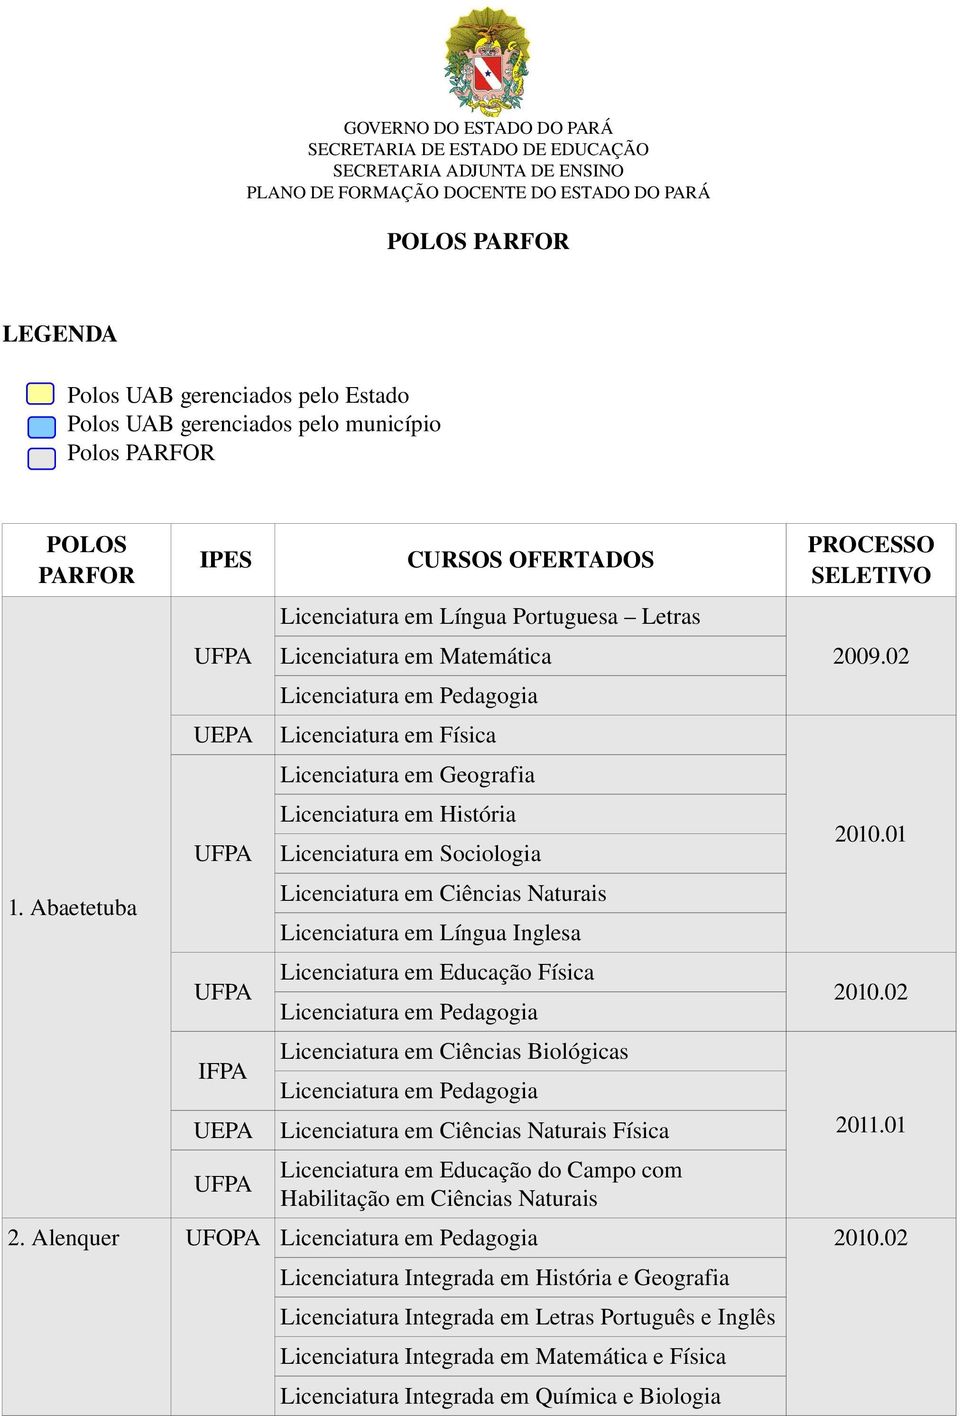 IPES CURSOS OFERTADOS PROCESSO SELETIVO Letras 2009.02 Licenciatura em Sociologia 1.